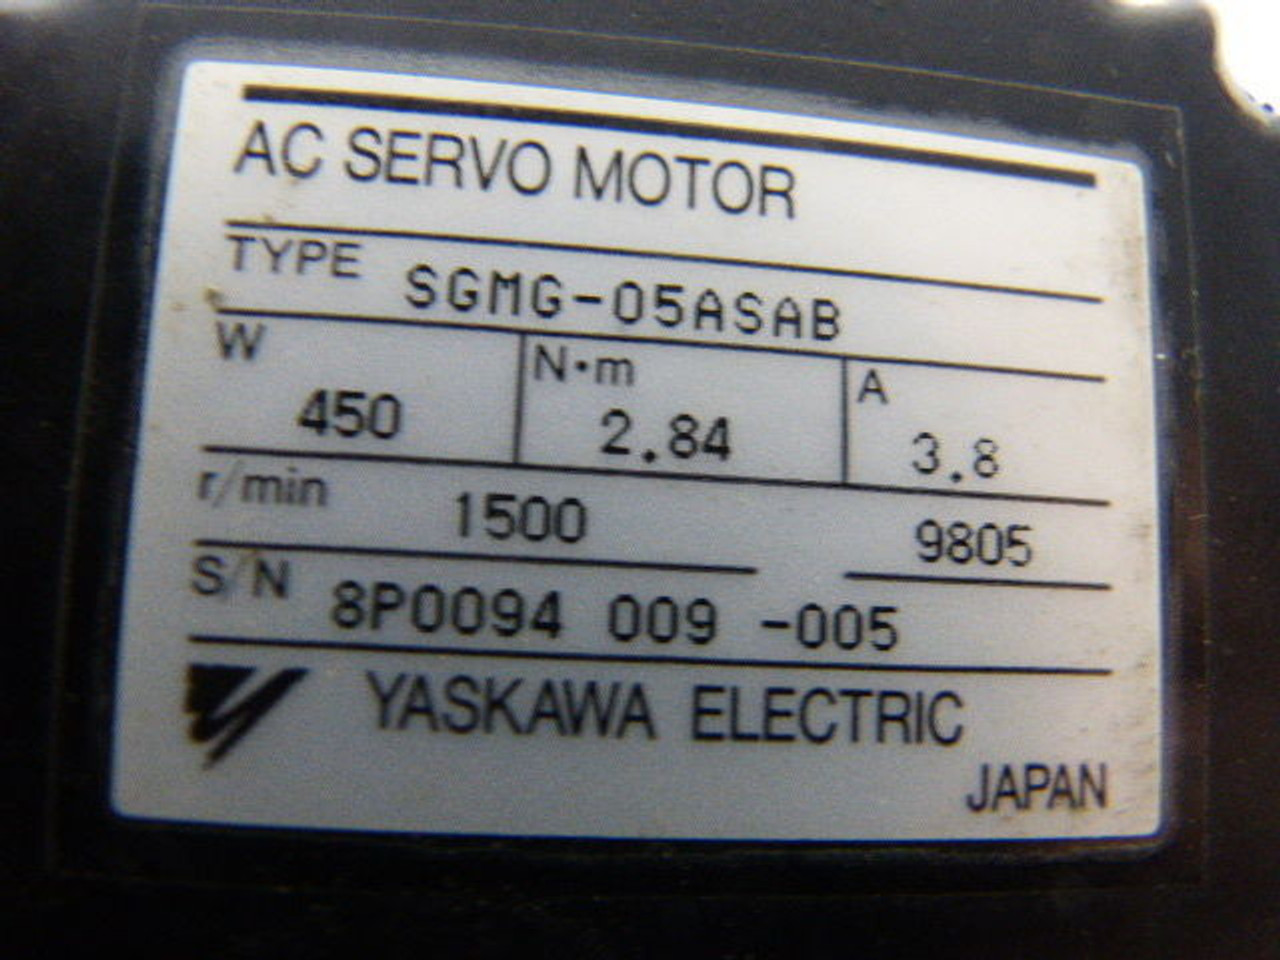 Yaskawa SGMG-05ASAB AC Servo Motor 450W 1500RPM 2.84Nm 3.8A USED